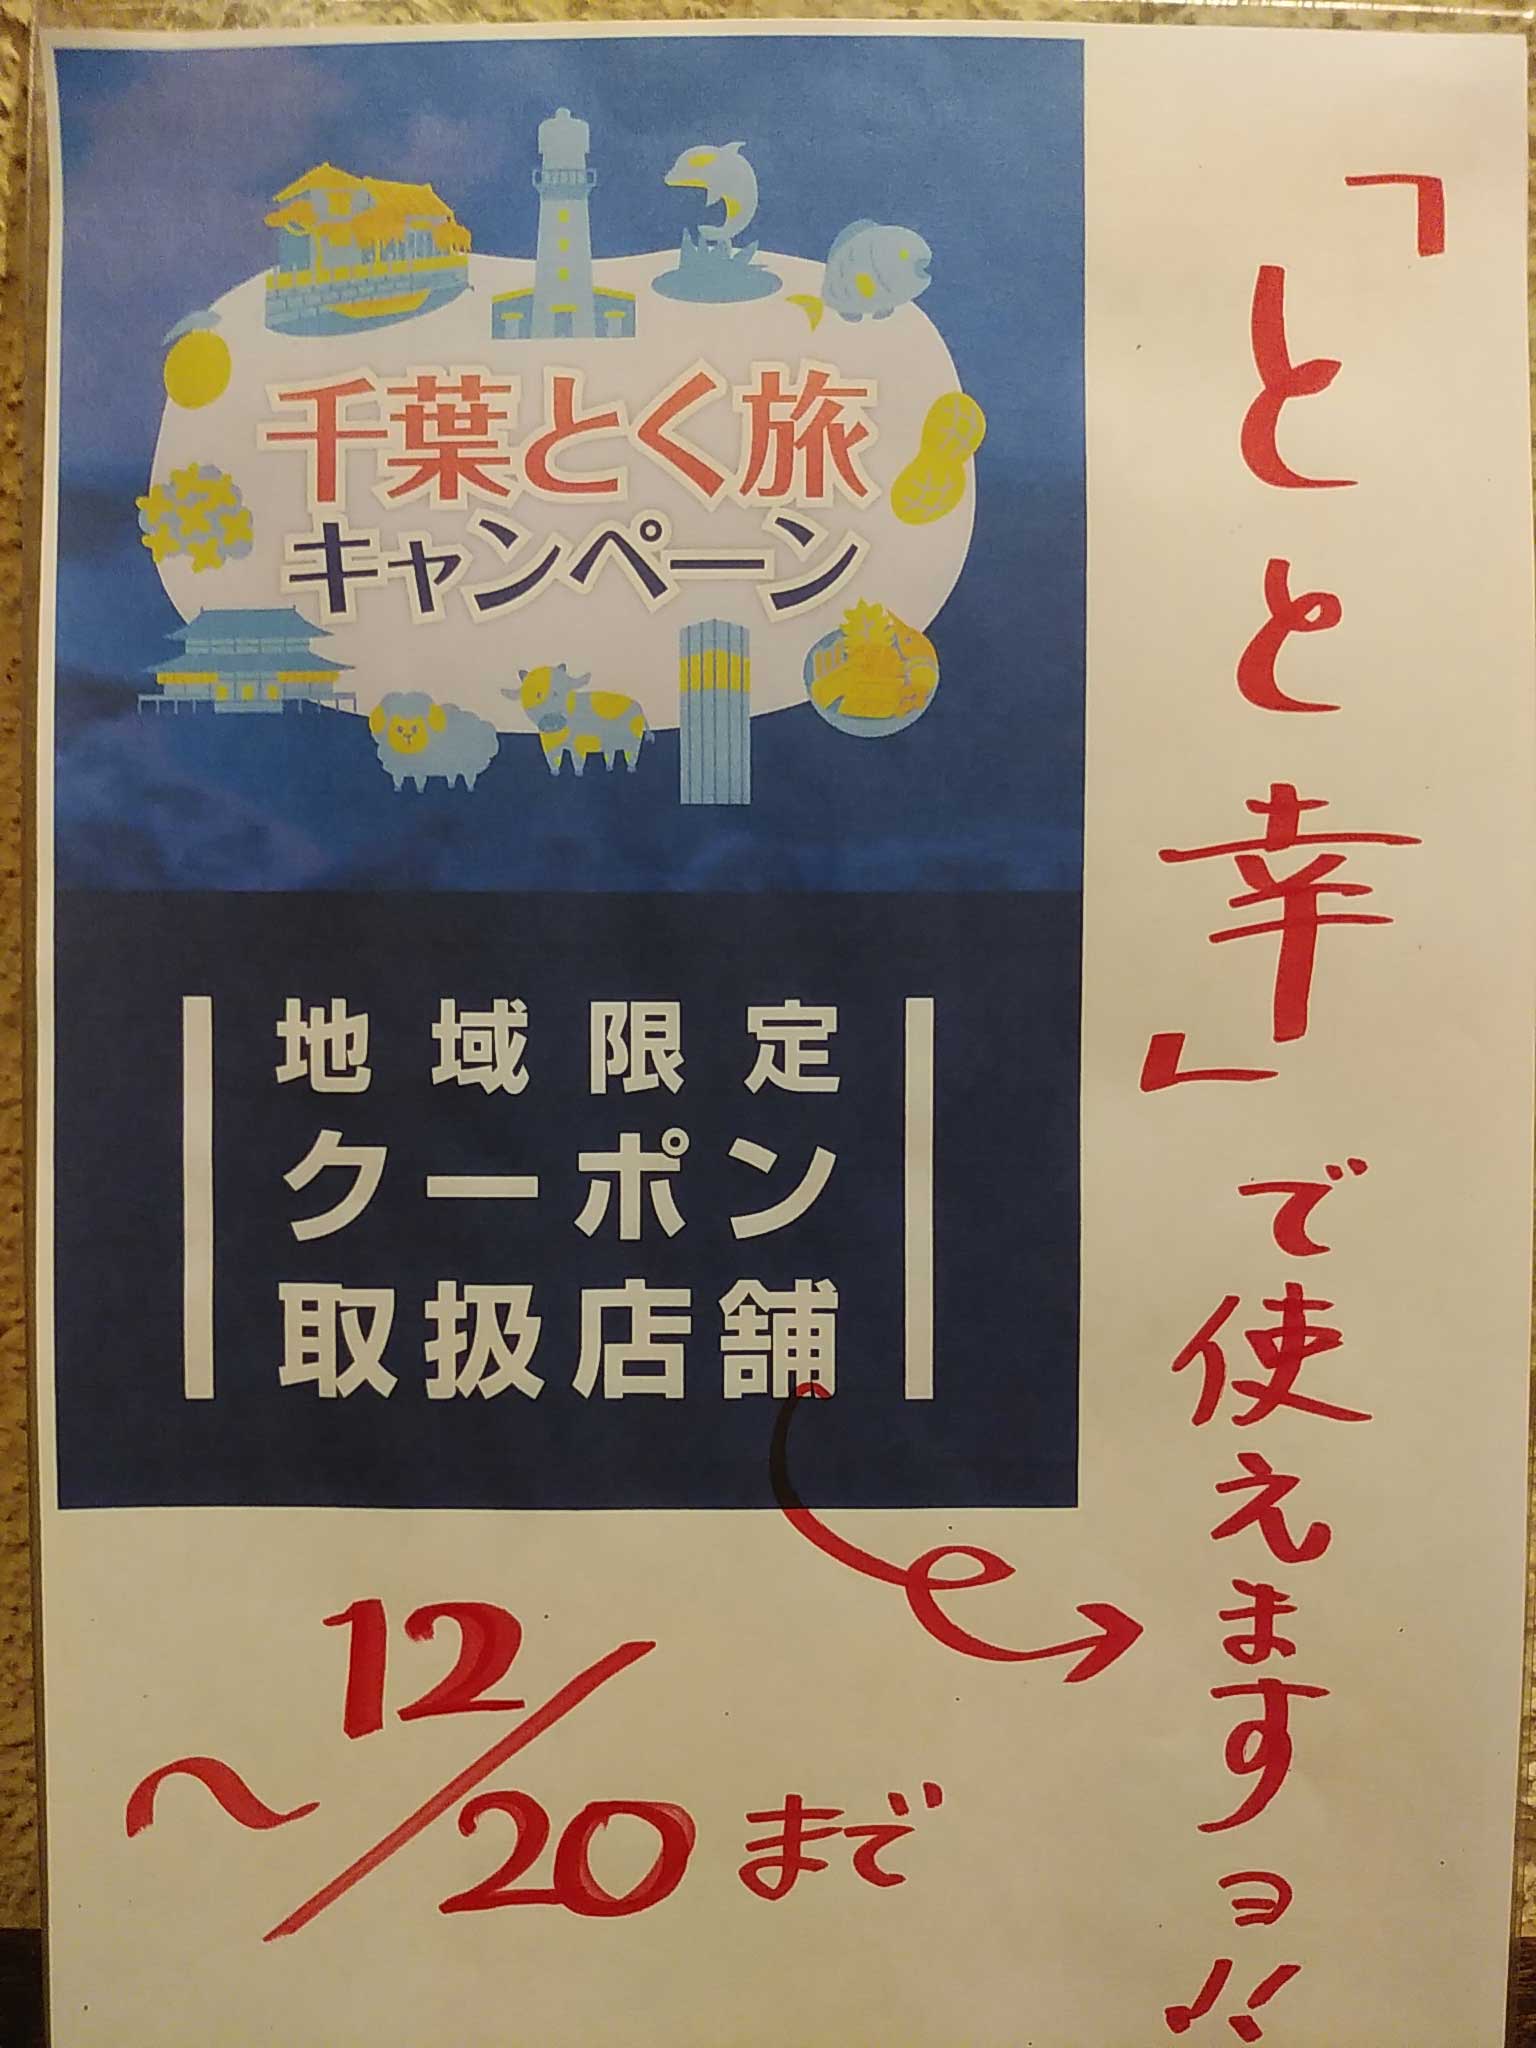 千葉県新型コロナ感染防止対策のモデル認証店